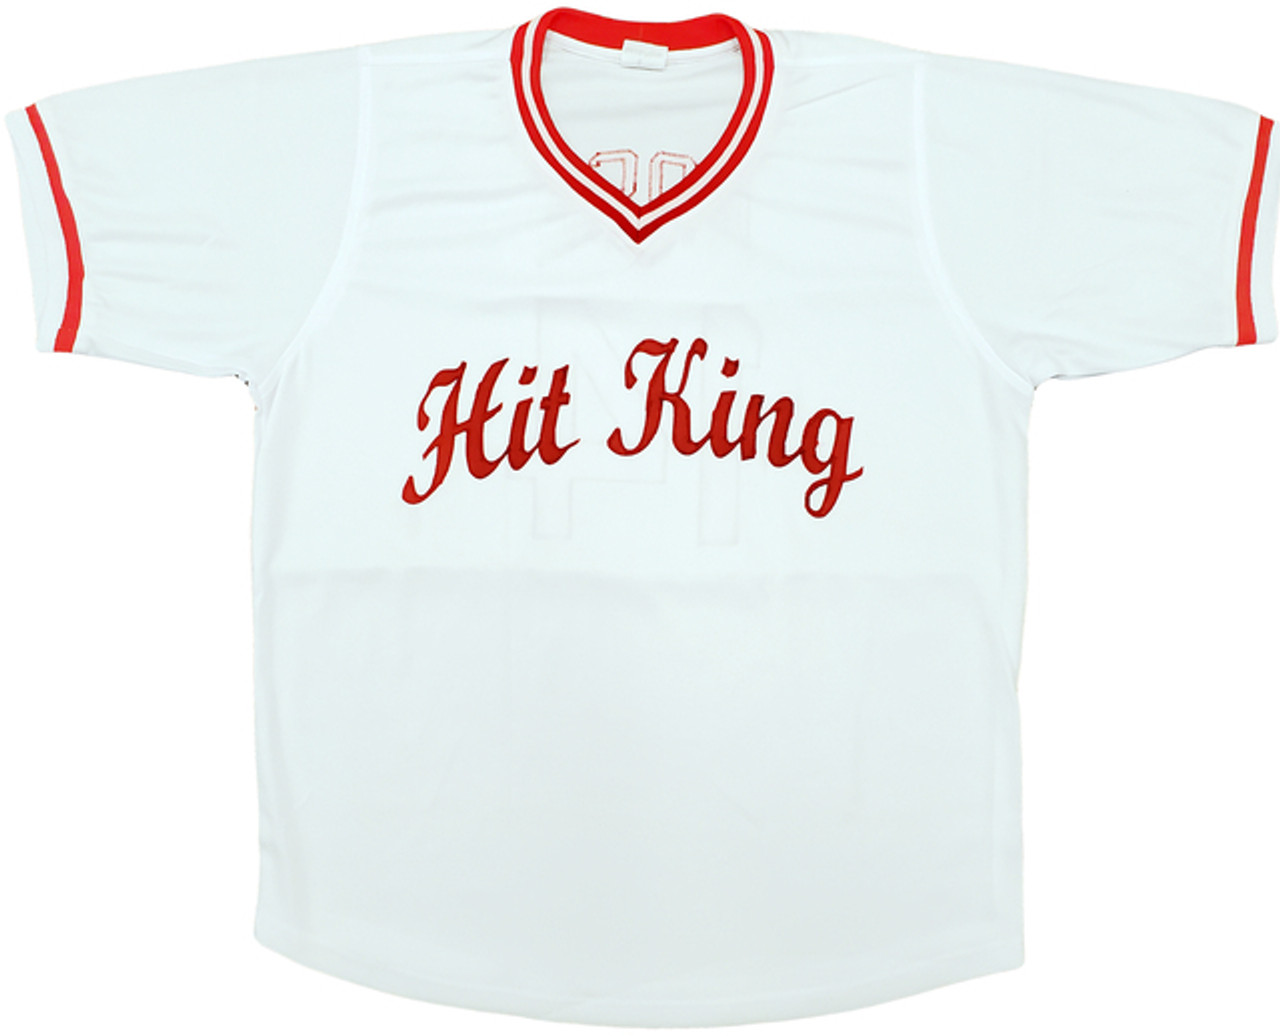 Mitchell & Ness, Shirts, New Xxl Pete Rose Cincinnati Reds Baseball Jersey  Mitchell Ness Cooperstown